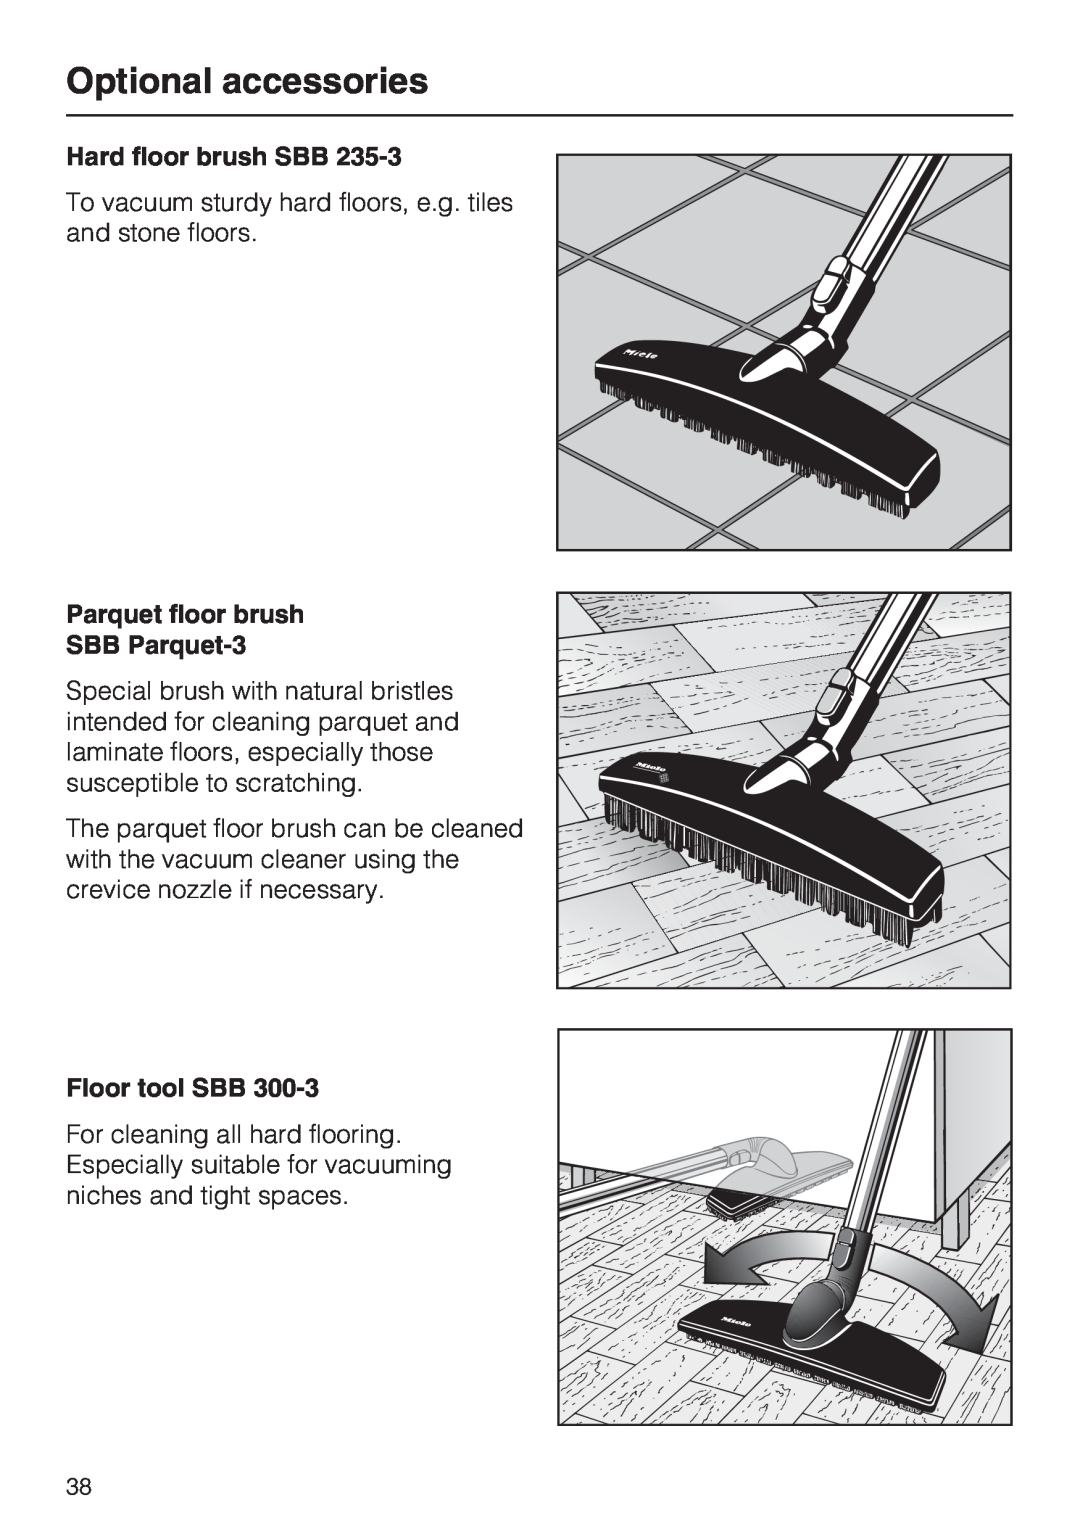 NEC S 5000 Optional accessories, Hard floor brush SBB, Parquet floor brush SBB Parquet-3, Floor tool SBB 